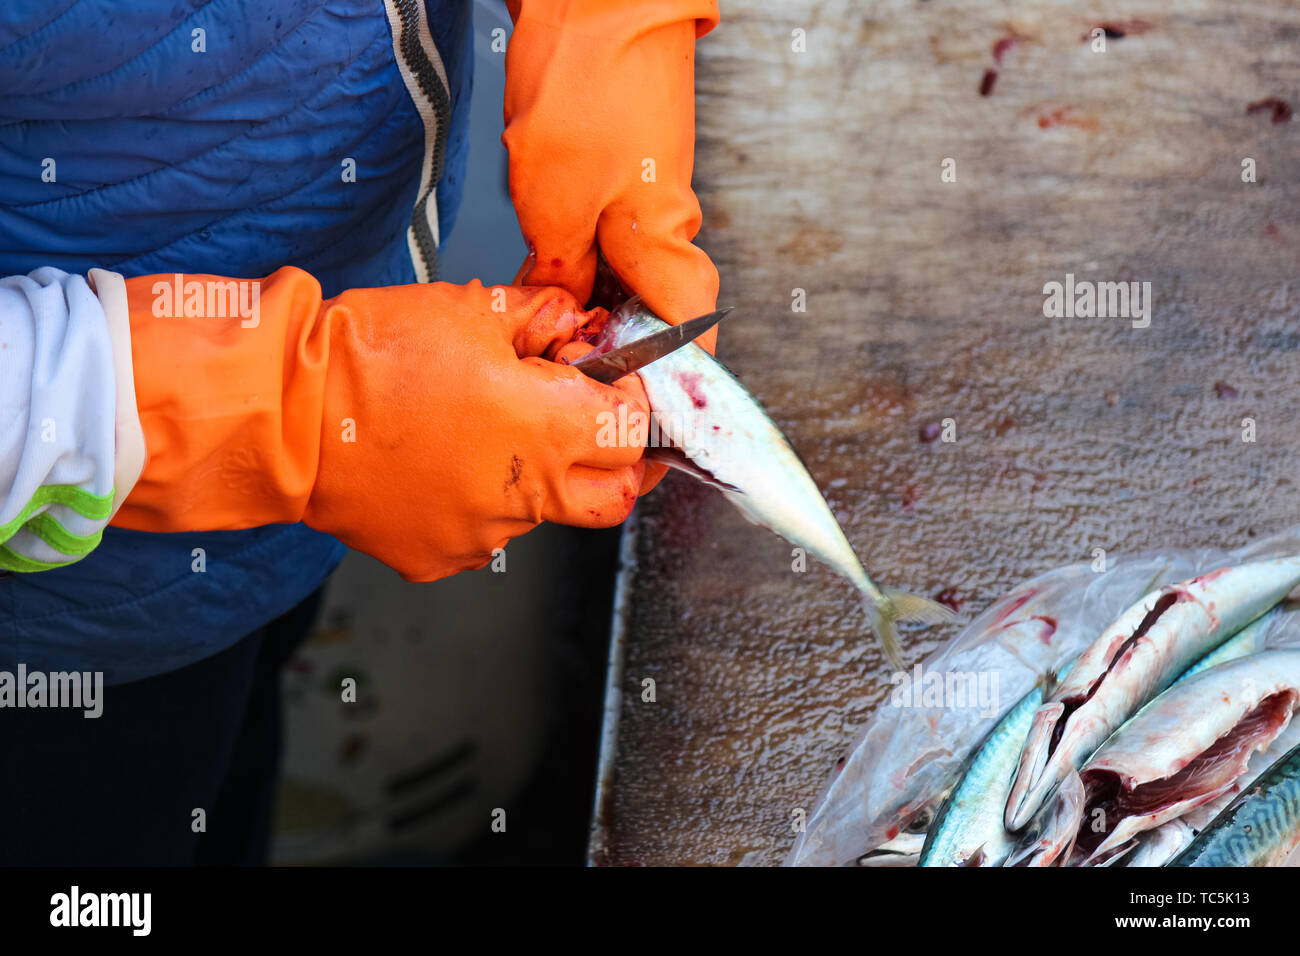 Dettaglio delle mani in arancione i guanti che sono eviscerazione di piccoli  pesci. Dalla lavorazione del pesce è necessario tirare le budella fuori del  pesce. Fotografato il mercato del pesce di Catania,